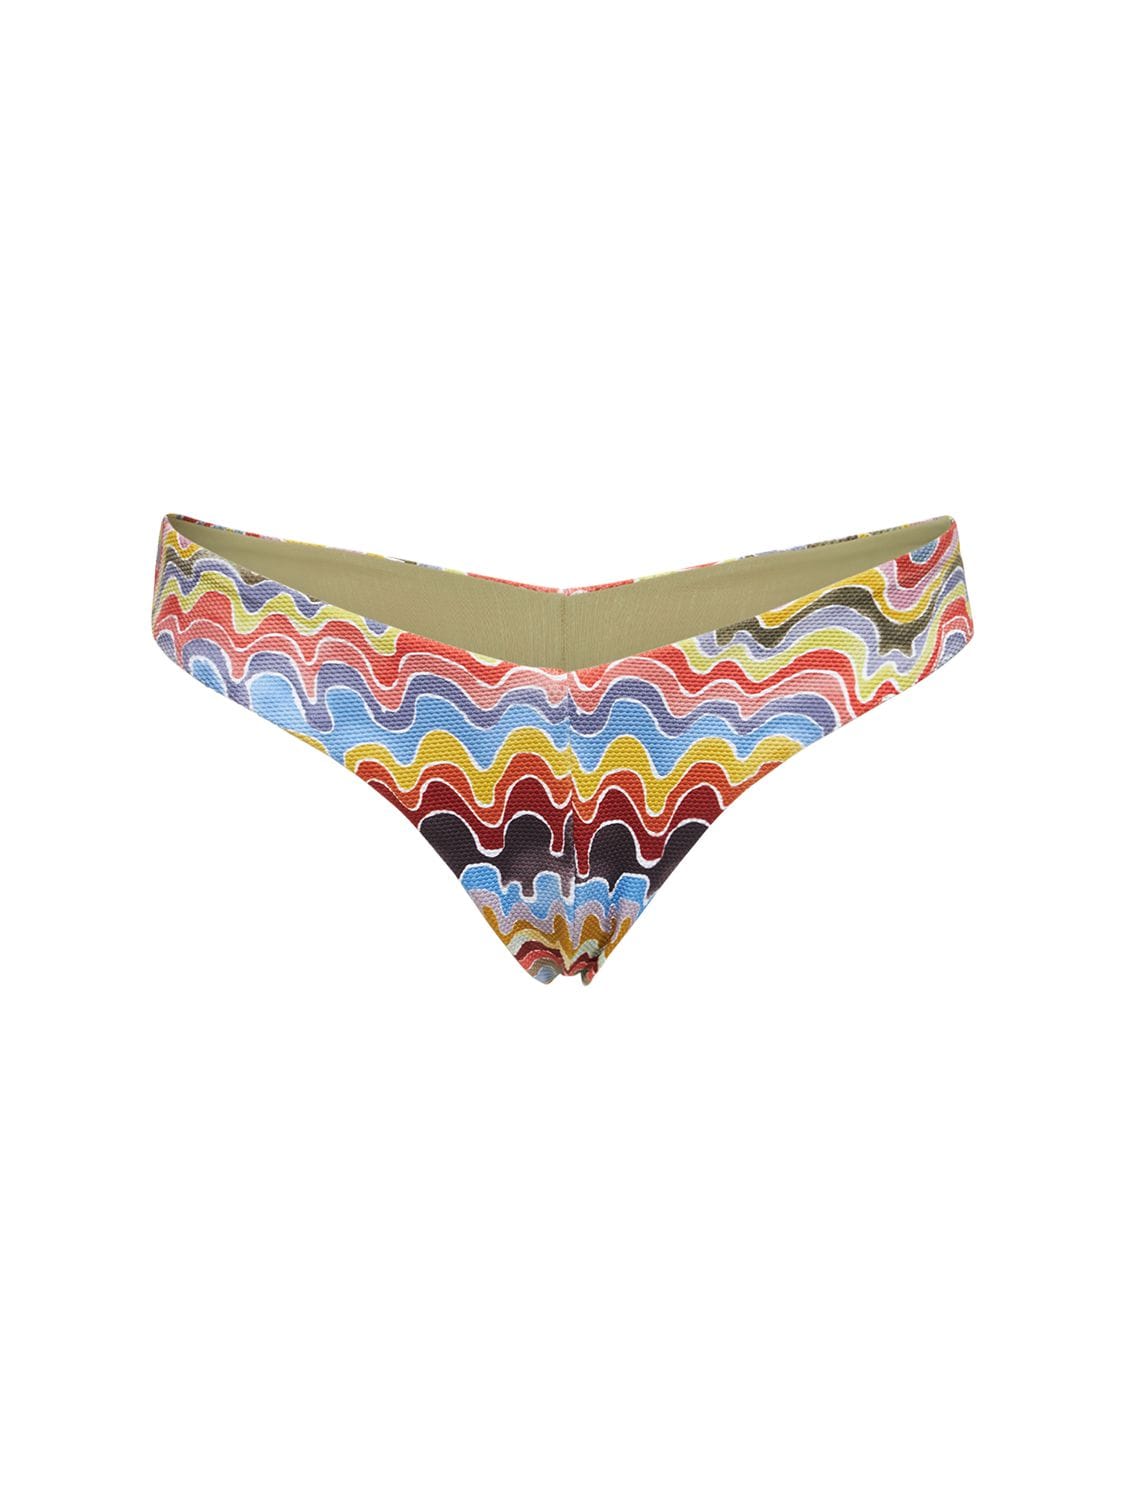 Fella Swim Chad Printed Bikini Bottom In Multicolor